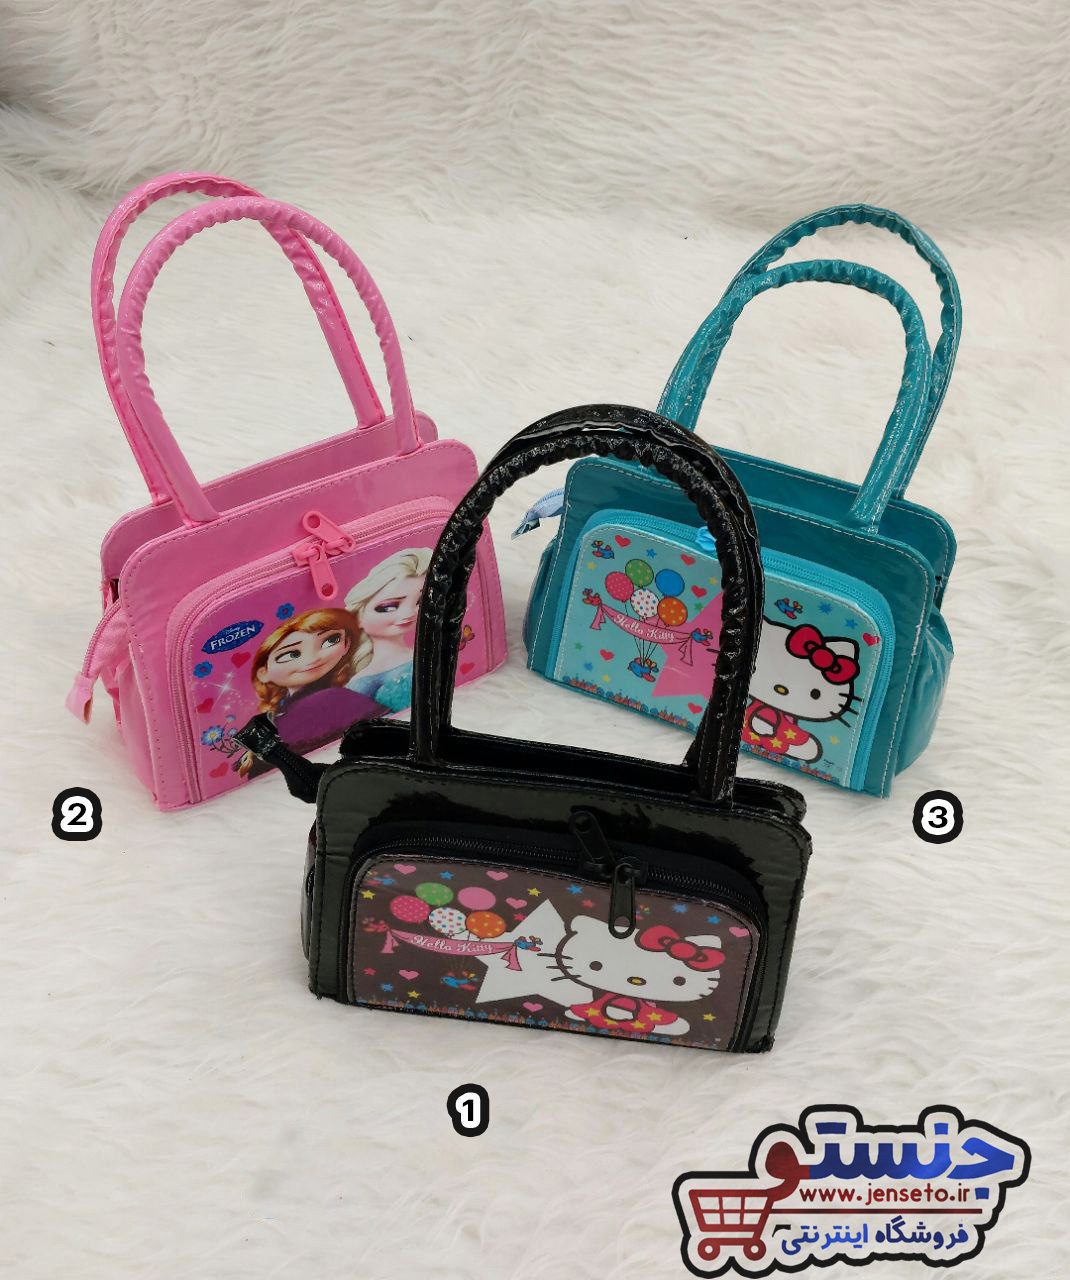 کیف دخترانه بچگانه جلو جیب عکس دار کد 1402266 - خرید انواع کیف های بچگانهدخترانه و پسرانه جدید - فروشگاه اینترنتی جنستو